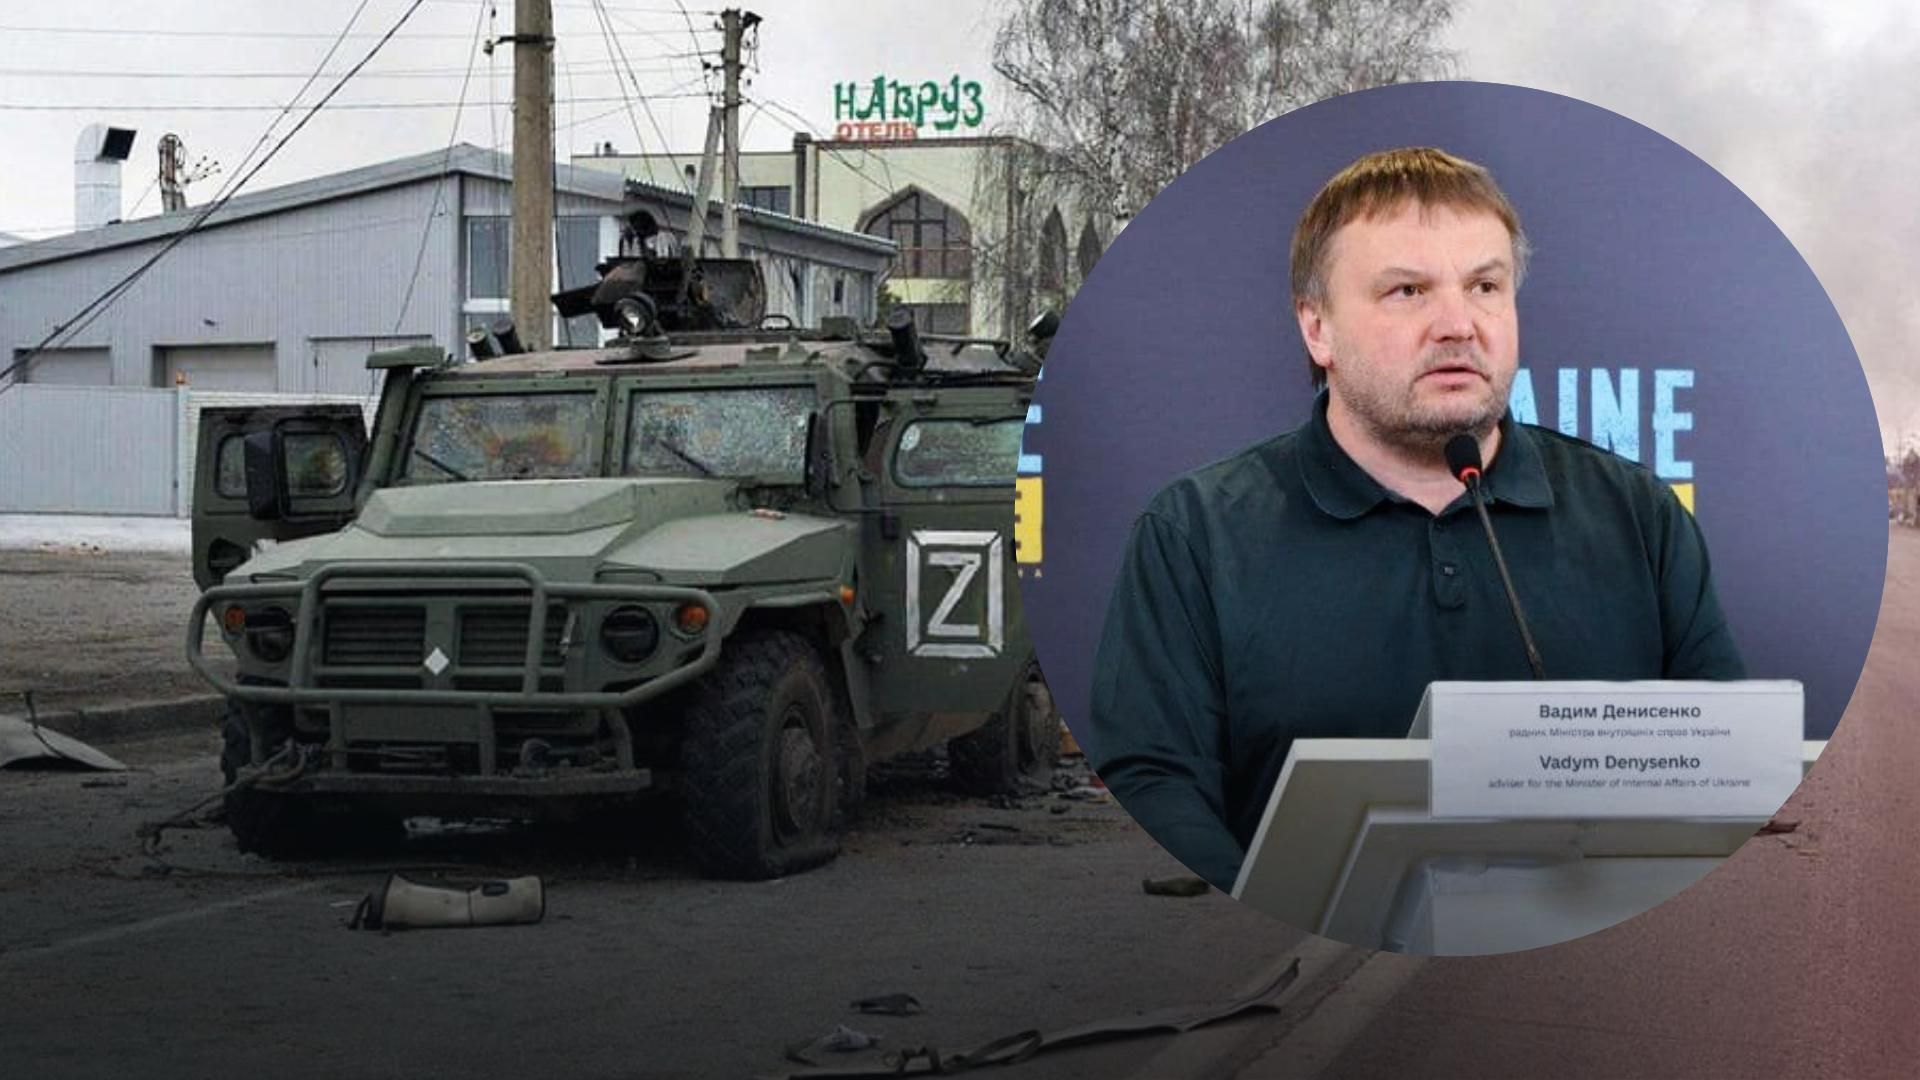 Информационный вброс, – Денисенко о словах Шойгу и Кадырова по поводу "ускорения спецоперации"